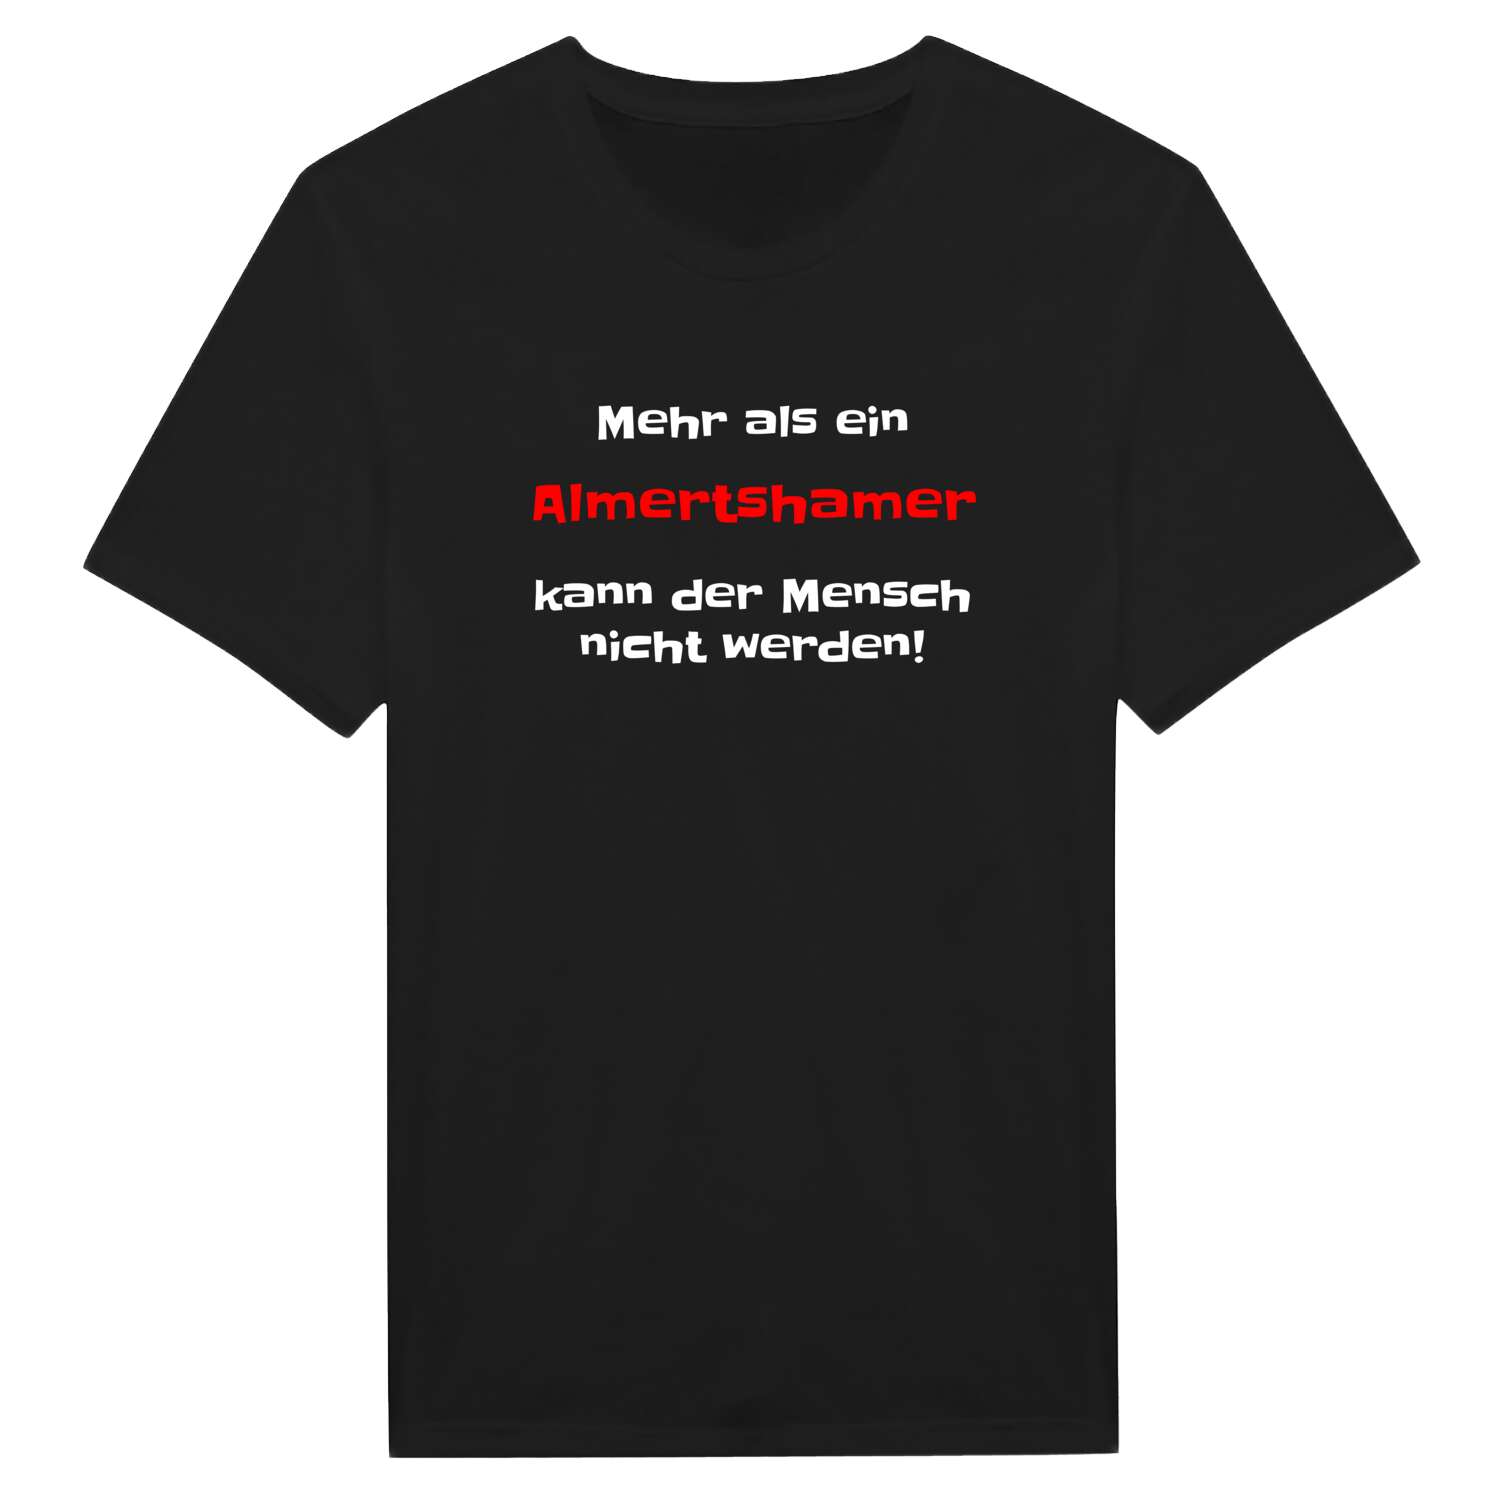 Almertsham T-Shirt »Mehr als ein«